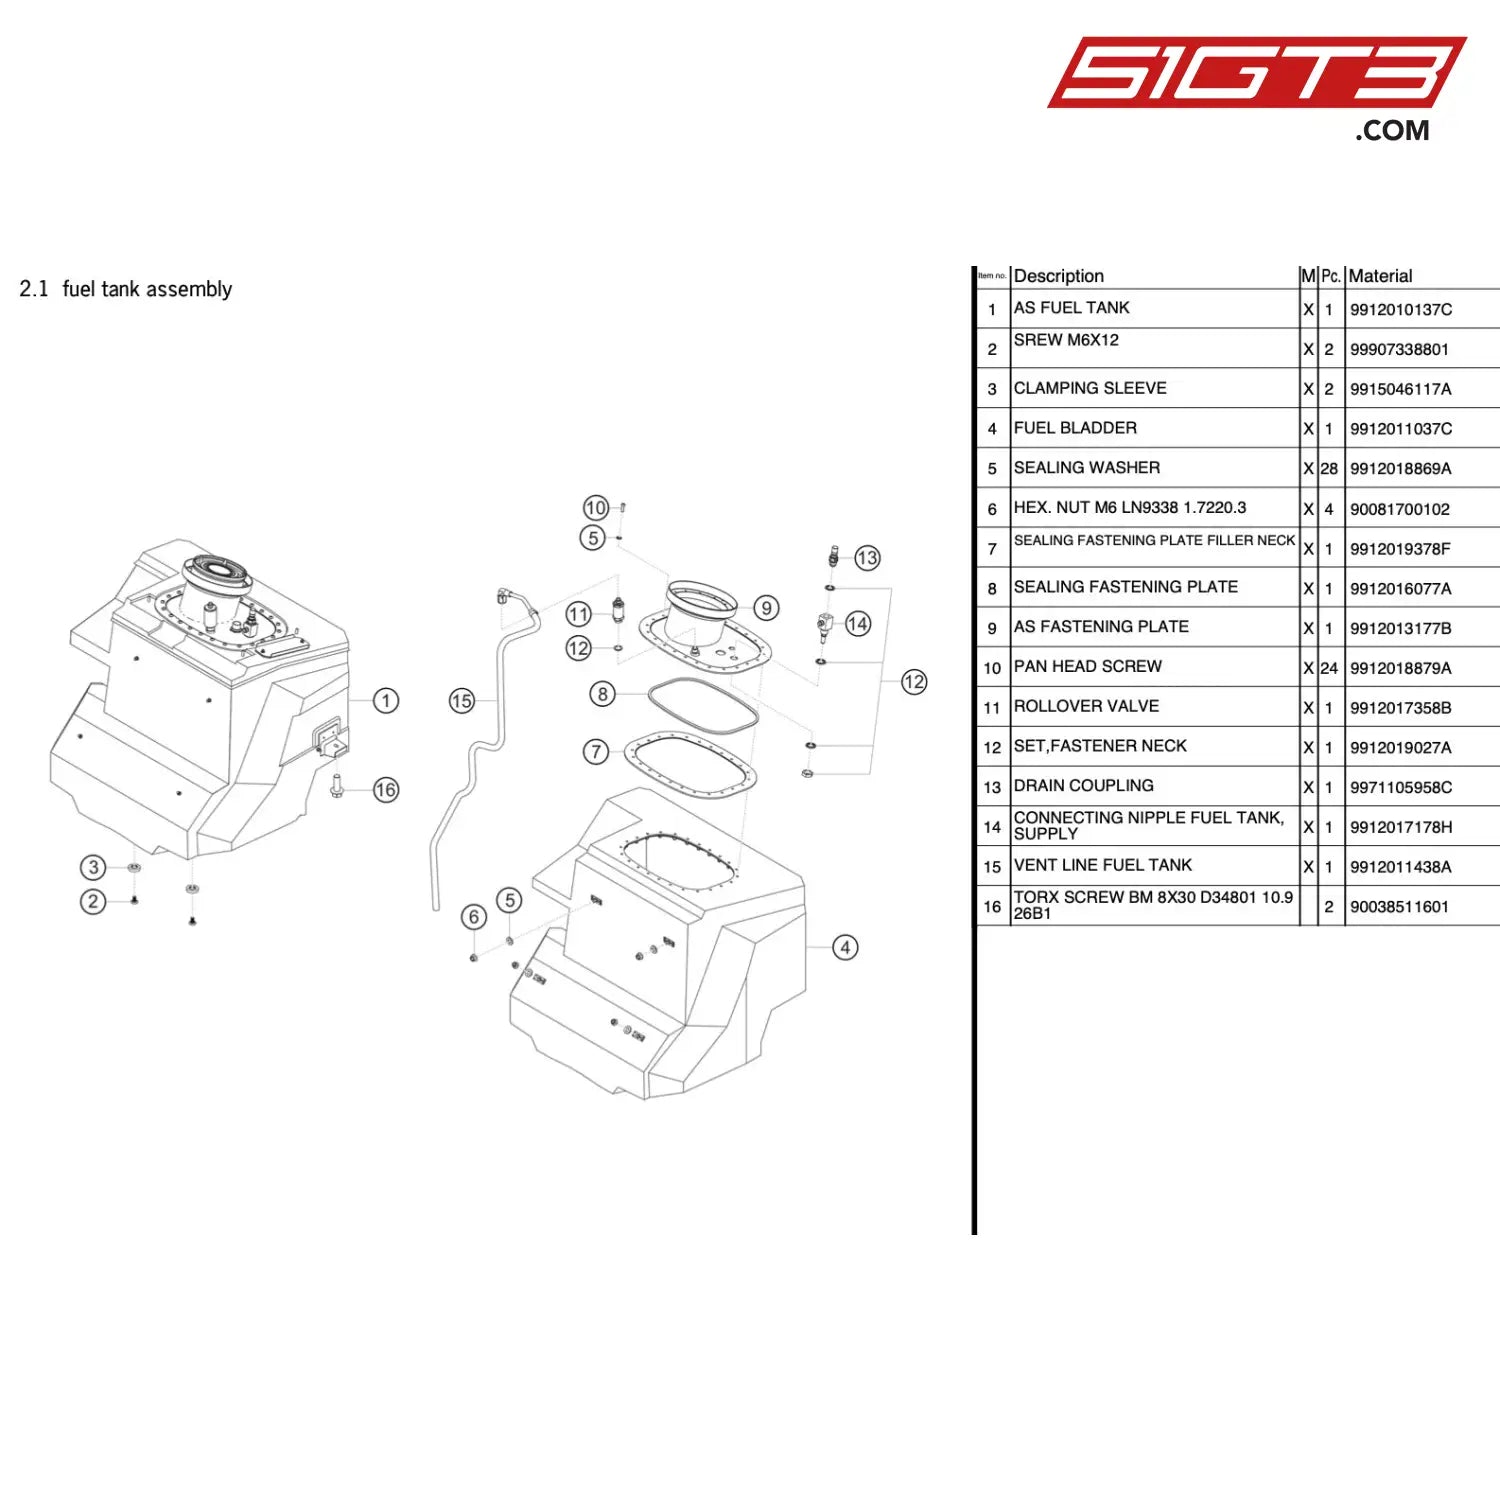 Torx Screw Bm 8X30 D34801 10.9 26B1 - 90038511601 [Porsche 911 Gt3 R Type 991 (Gen 1)] Fuel Tank